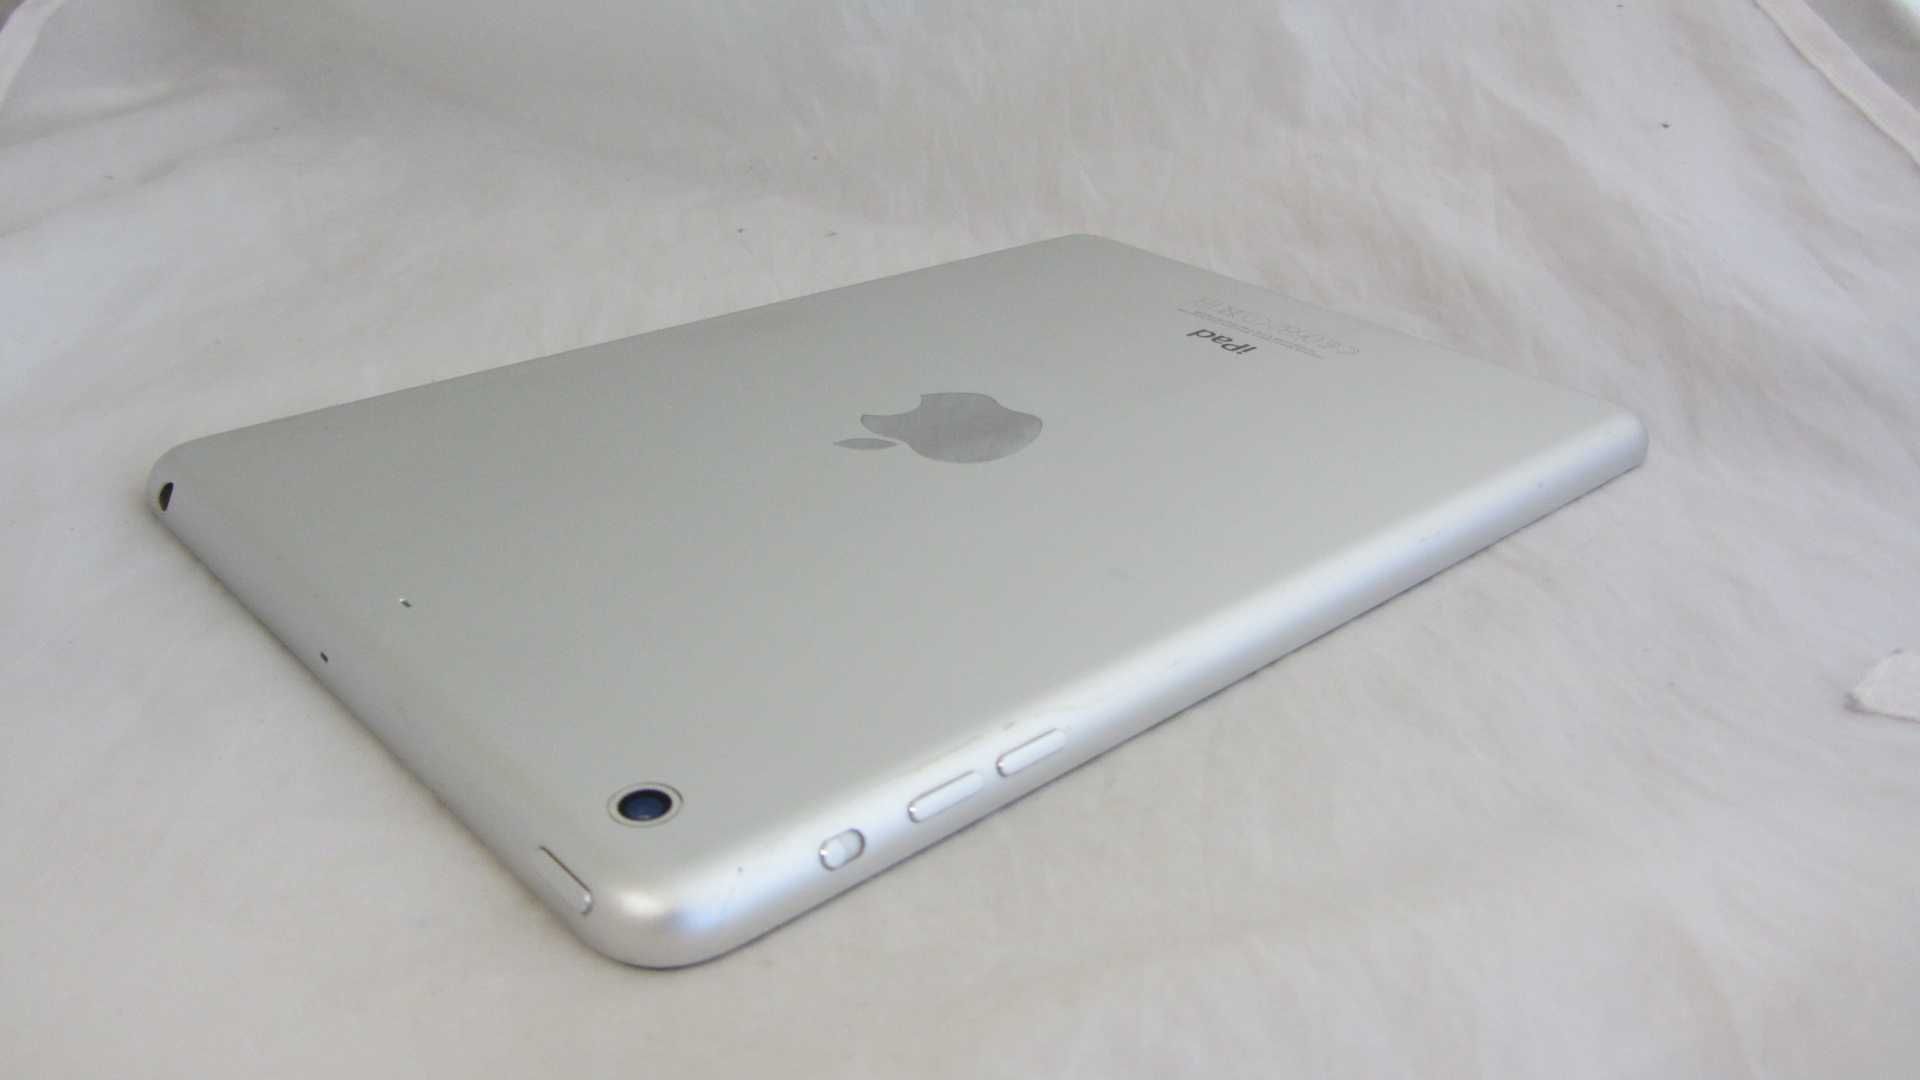 Apple iPad mini 2 32Gb Wi-fi White